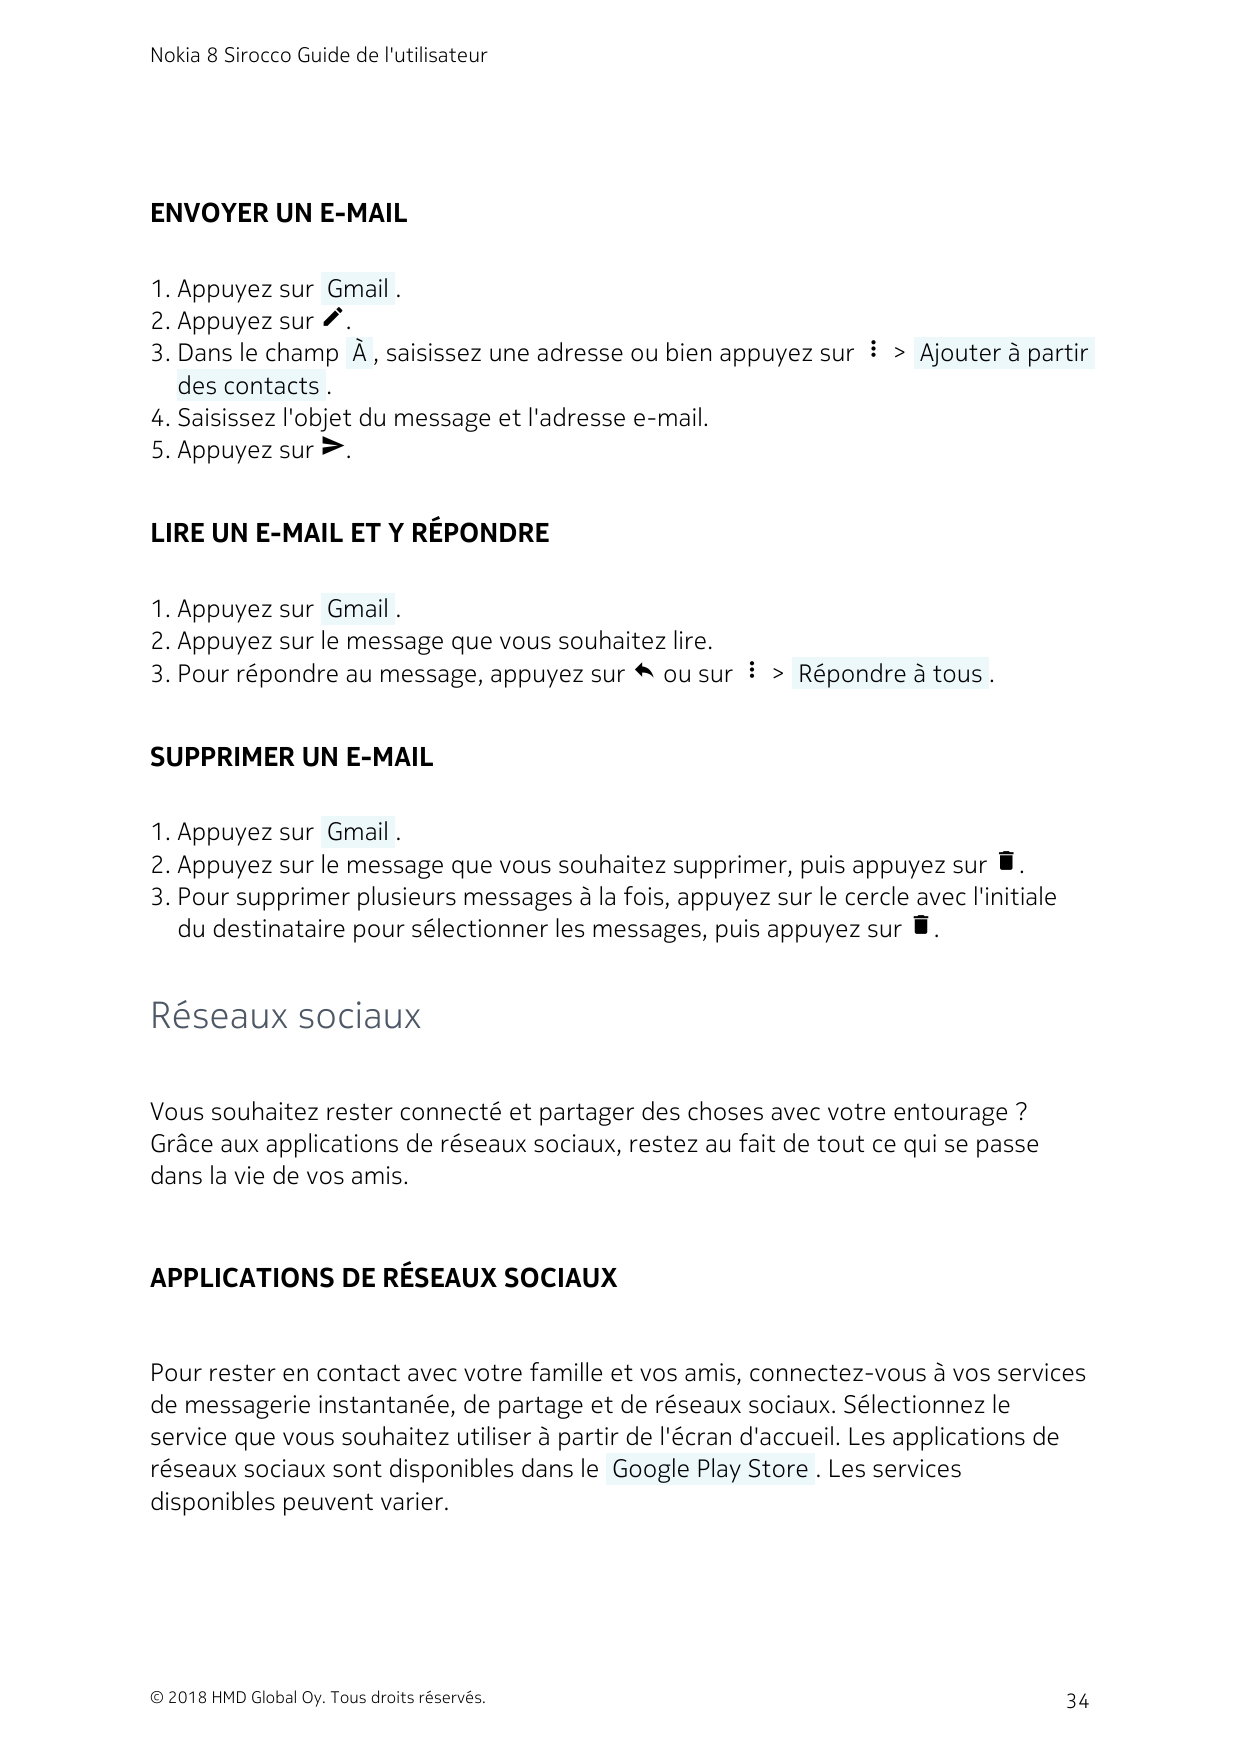 Nokia 8 Sirocco Guide de l'utilisateurENVOYER UN E-MAIL1. Appuyez sur  Gmail .2. Appuyez sur create.3. Dans le champ  À , saisis